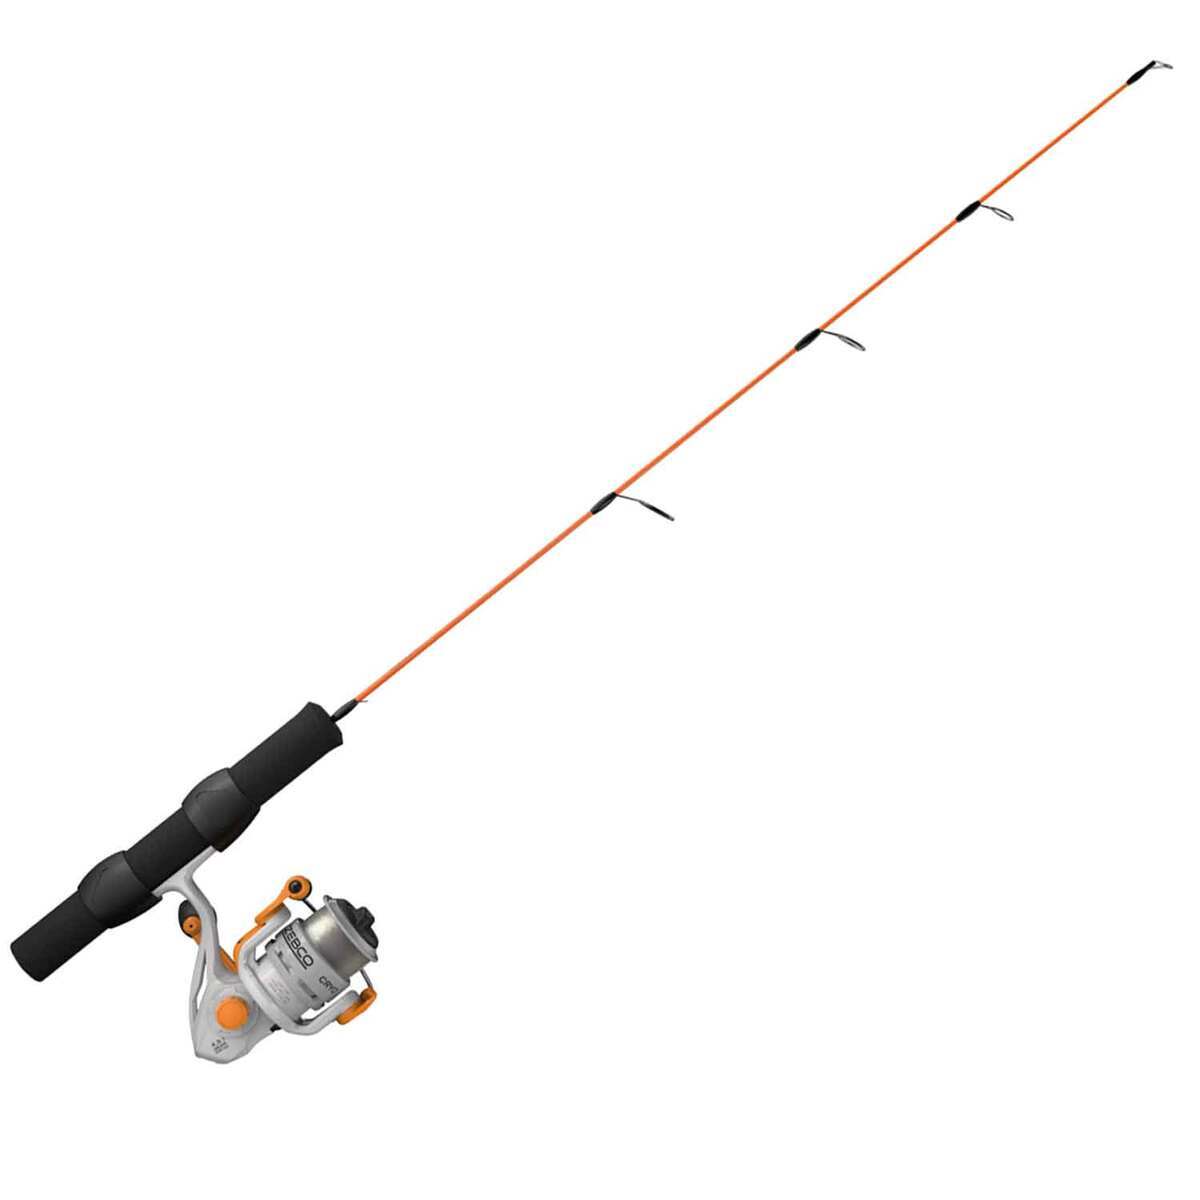 Zebco Cryo Ice Fishing Rod Combo SKU - 605122